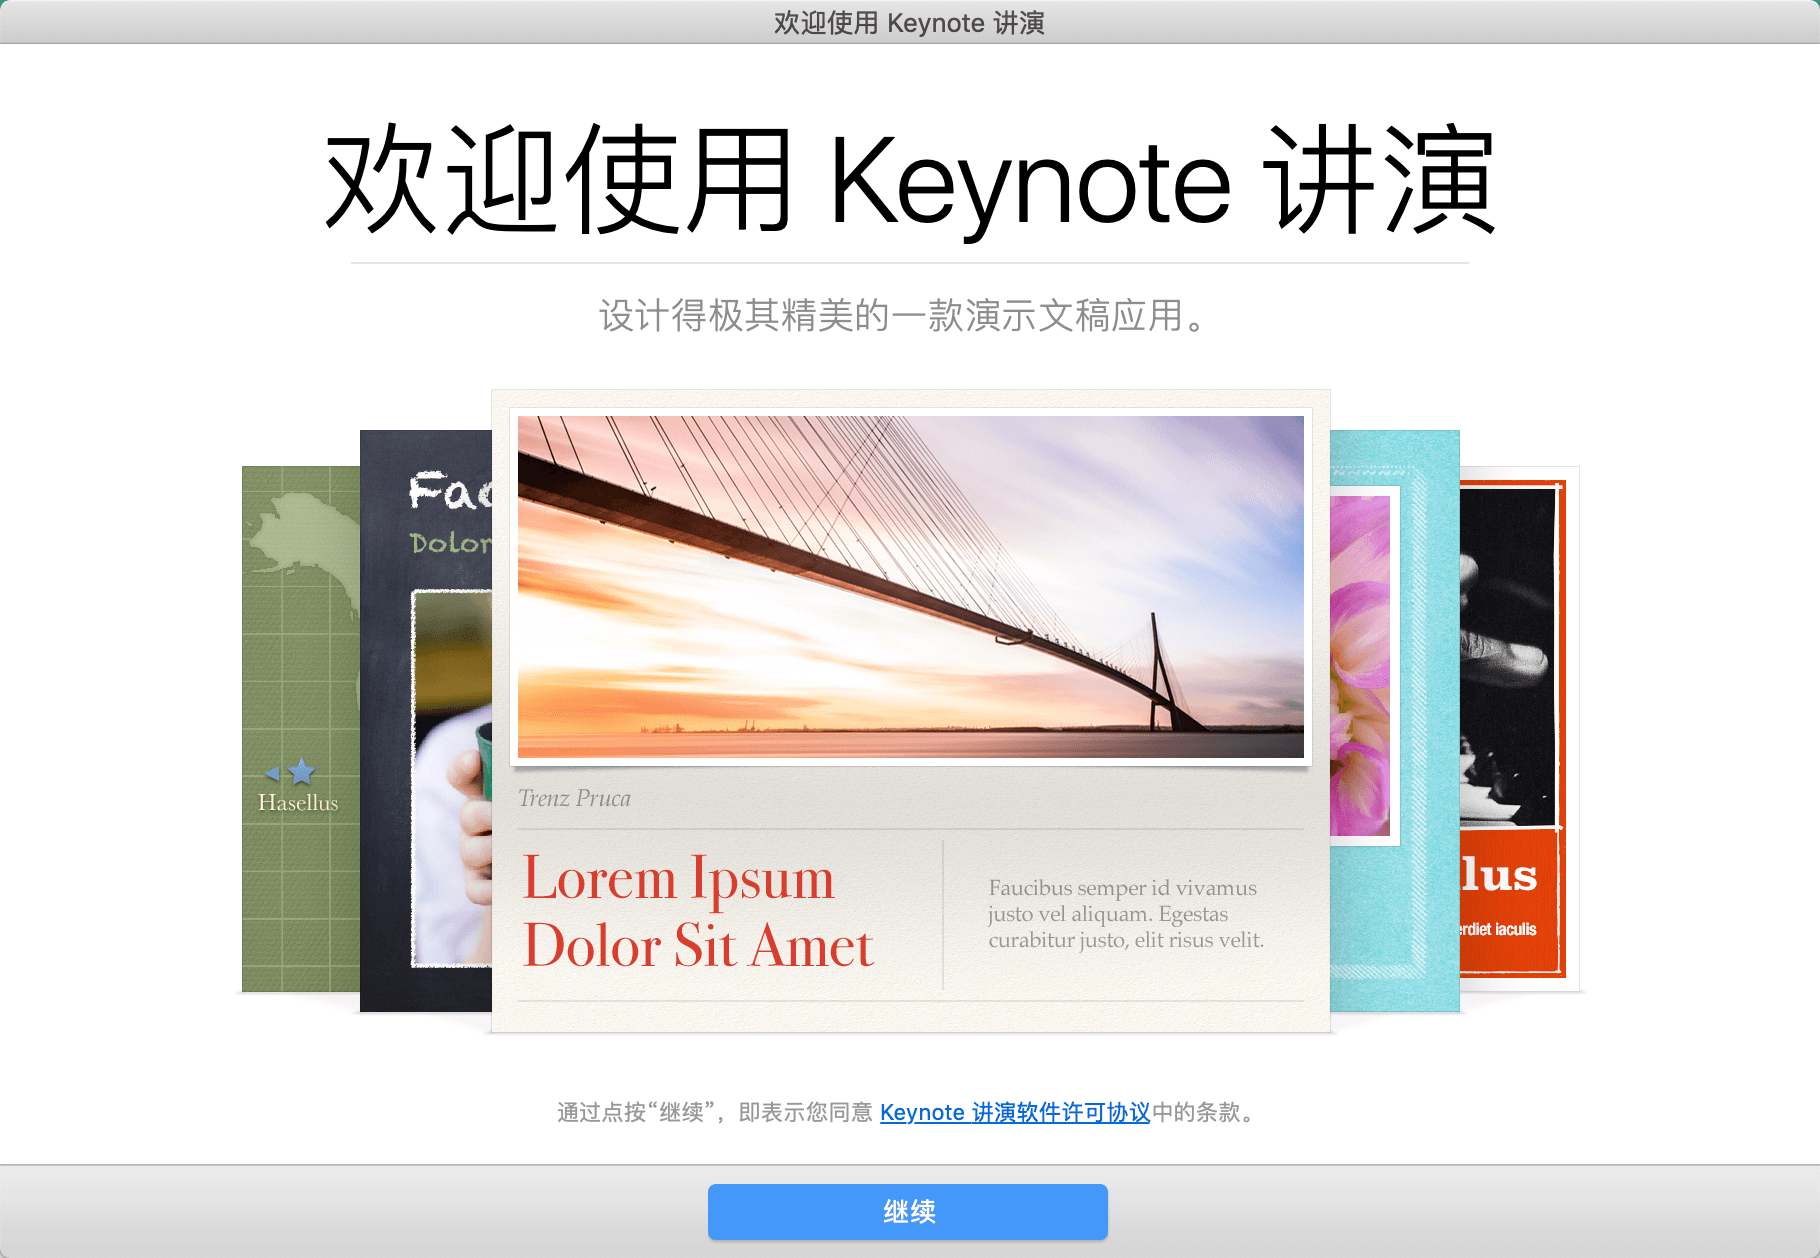 Keynote 讲演 12.2.1中文版